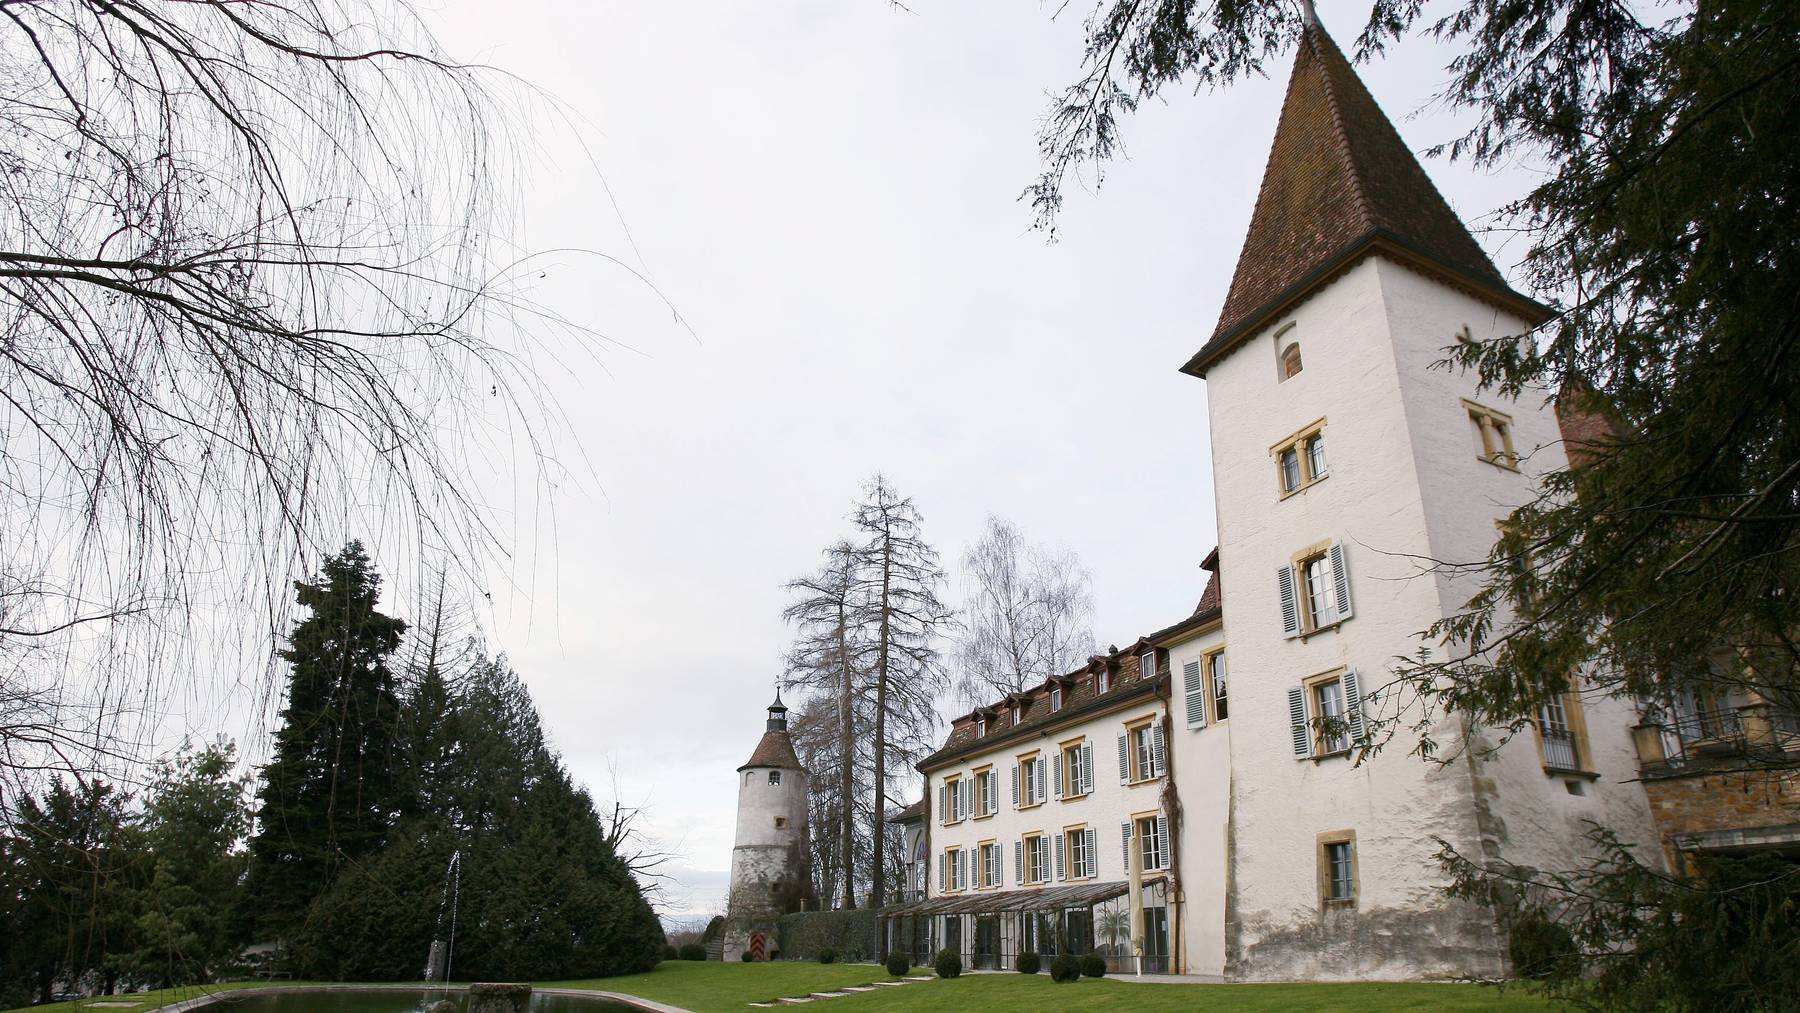 Sicht auf das Schloss des Dorfes Münchenwiler bei Murten (FR).